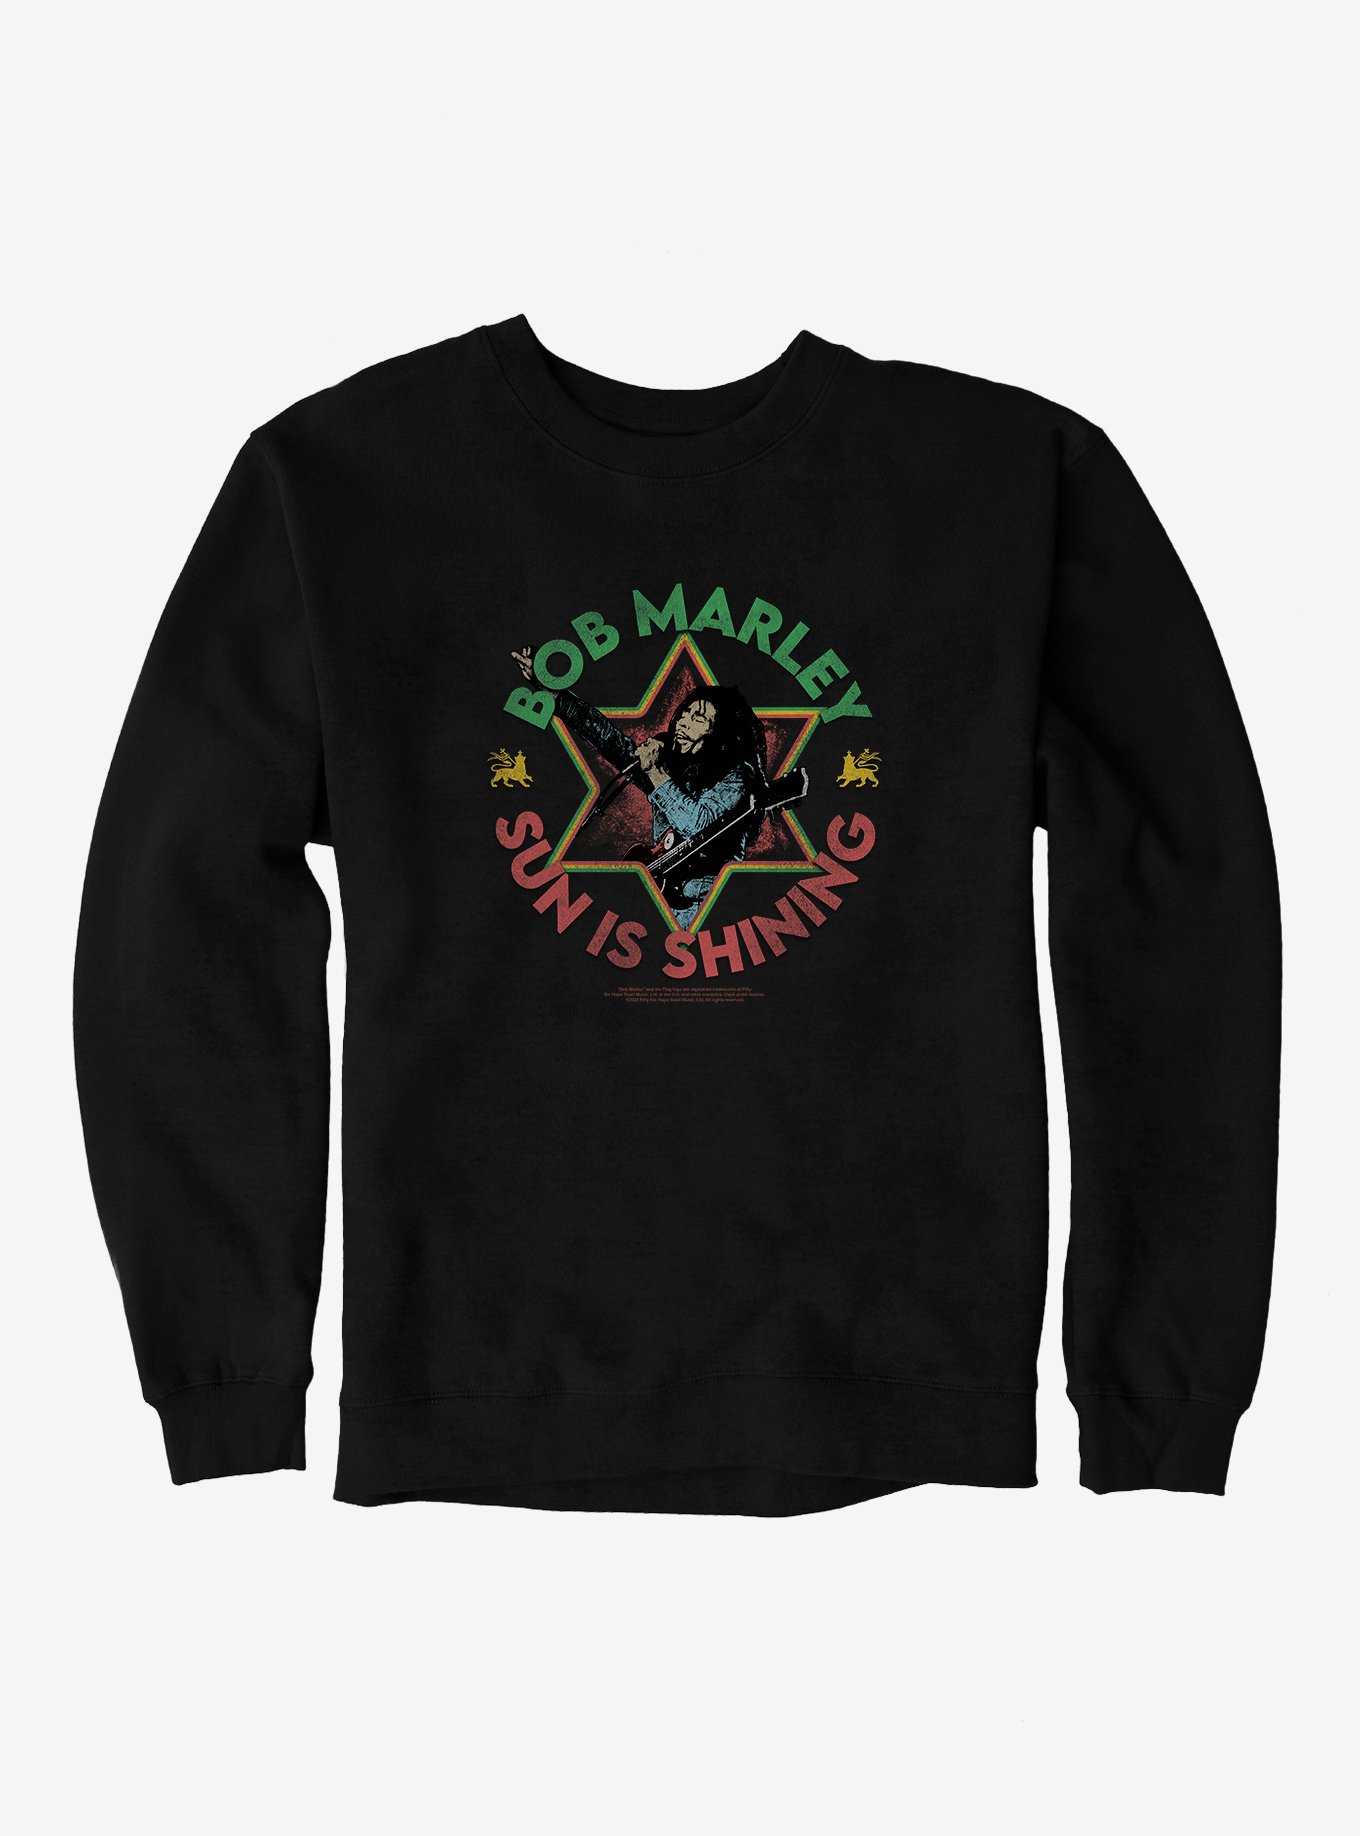 Bob Marley Sun Is Shining Sweatshirt, , hi-res